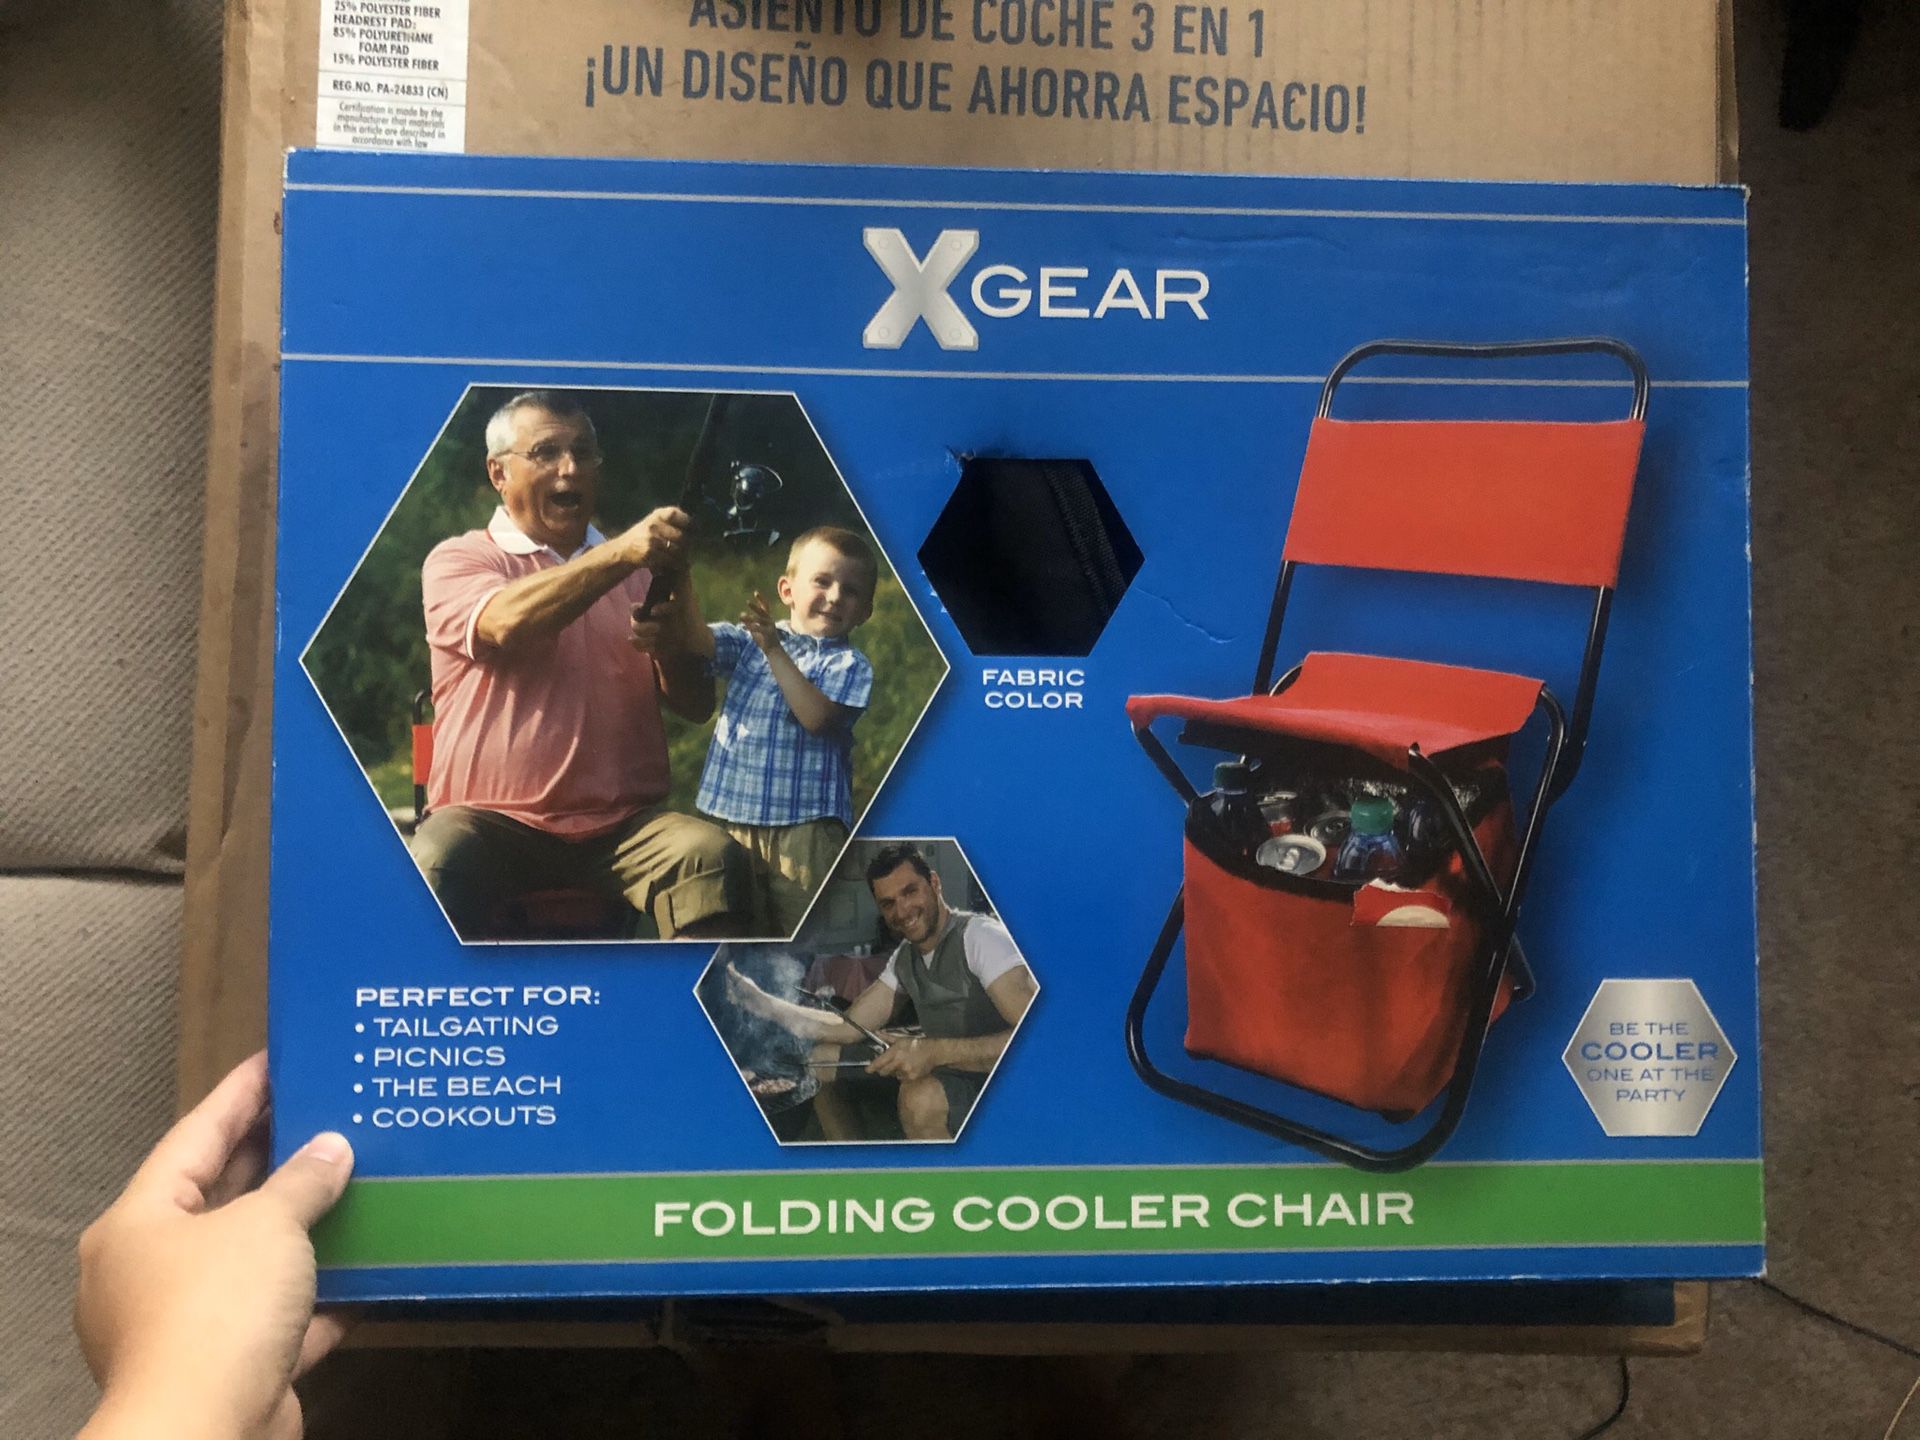 Folding cooler chair